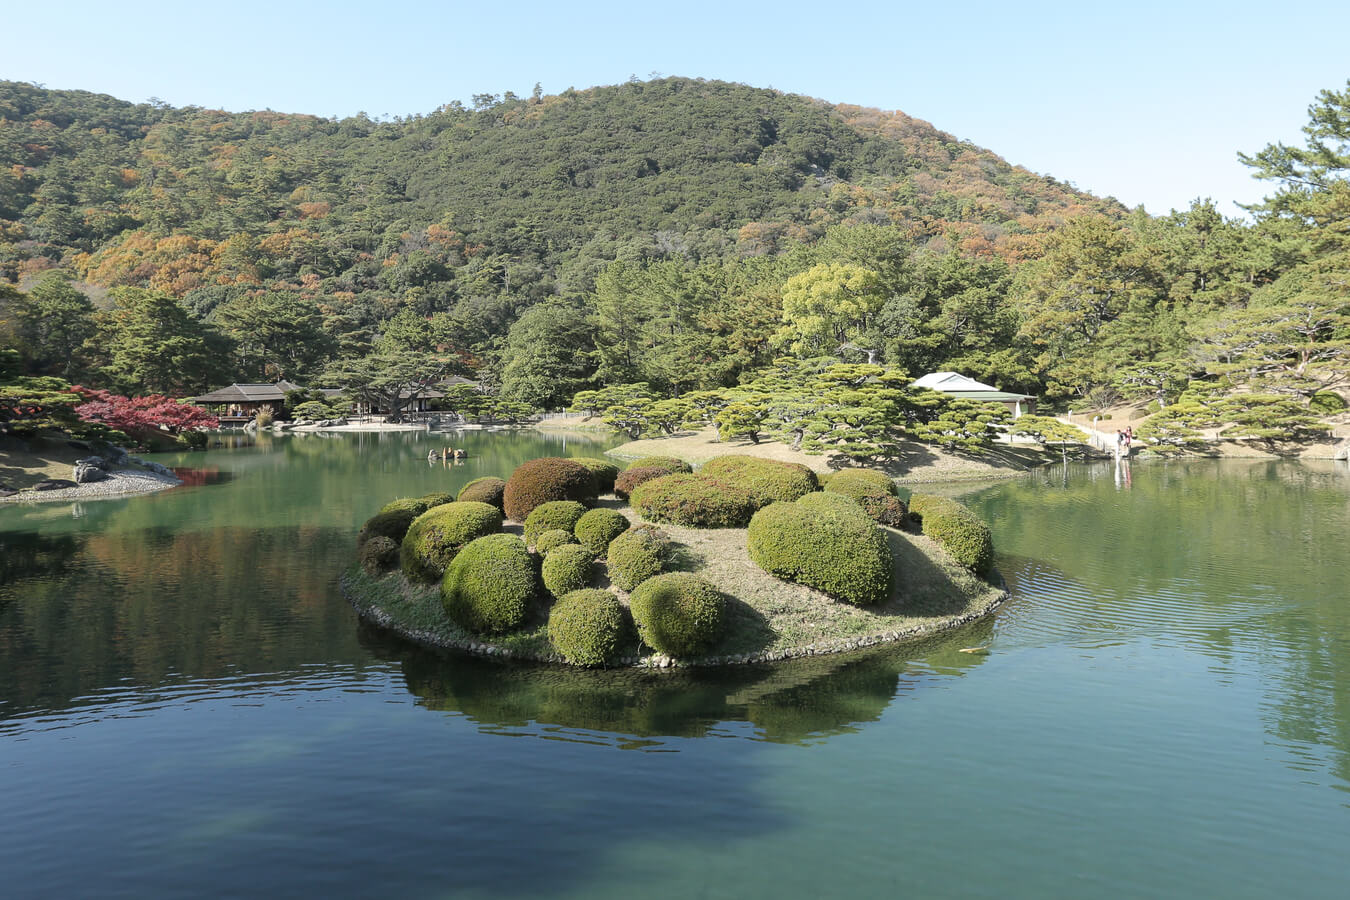 สวนริทสึริน (RITSURIN GARDEN) เที่ยวคางาวะ Kagawa สวนญี่ปุ่น